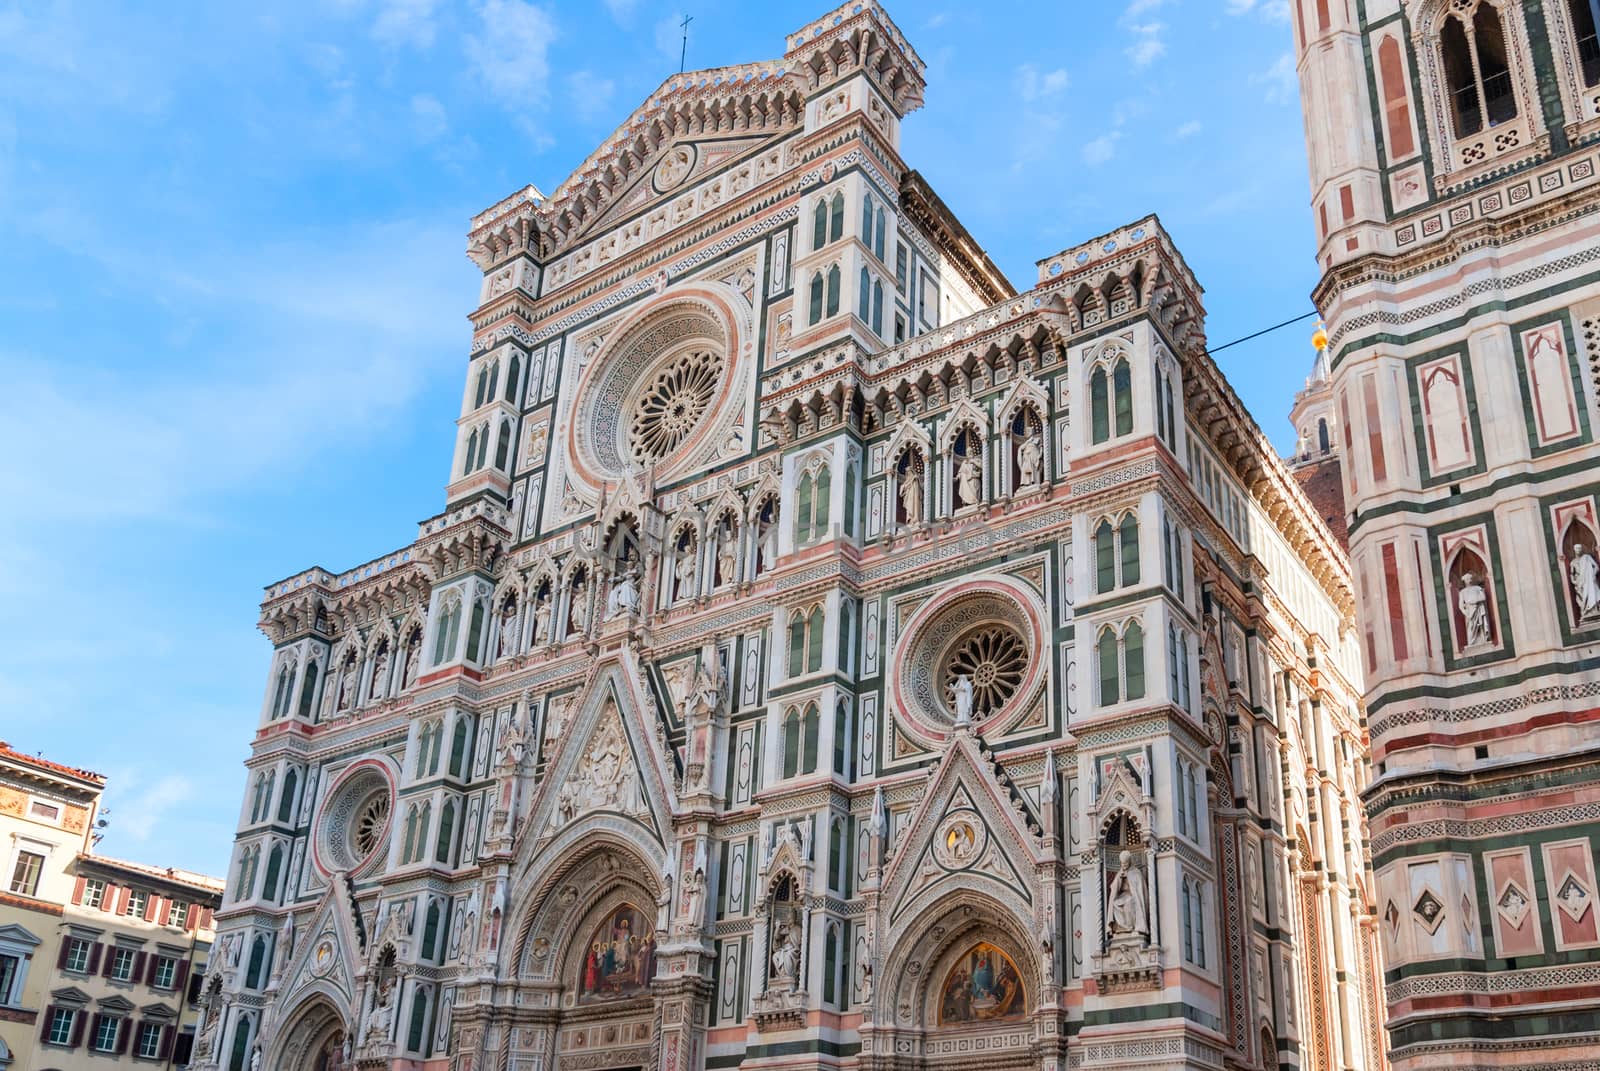 The Basilica di Santa Maria del Fiore in Florence by Zhukow